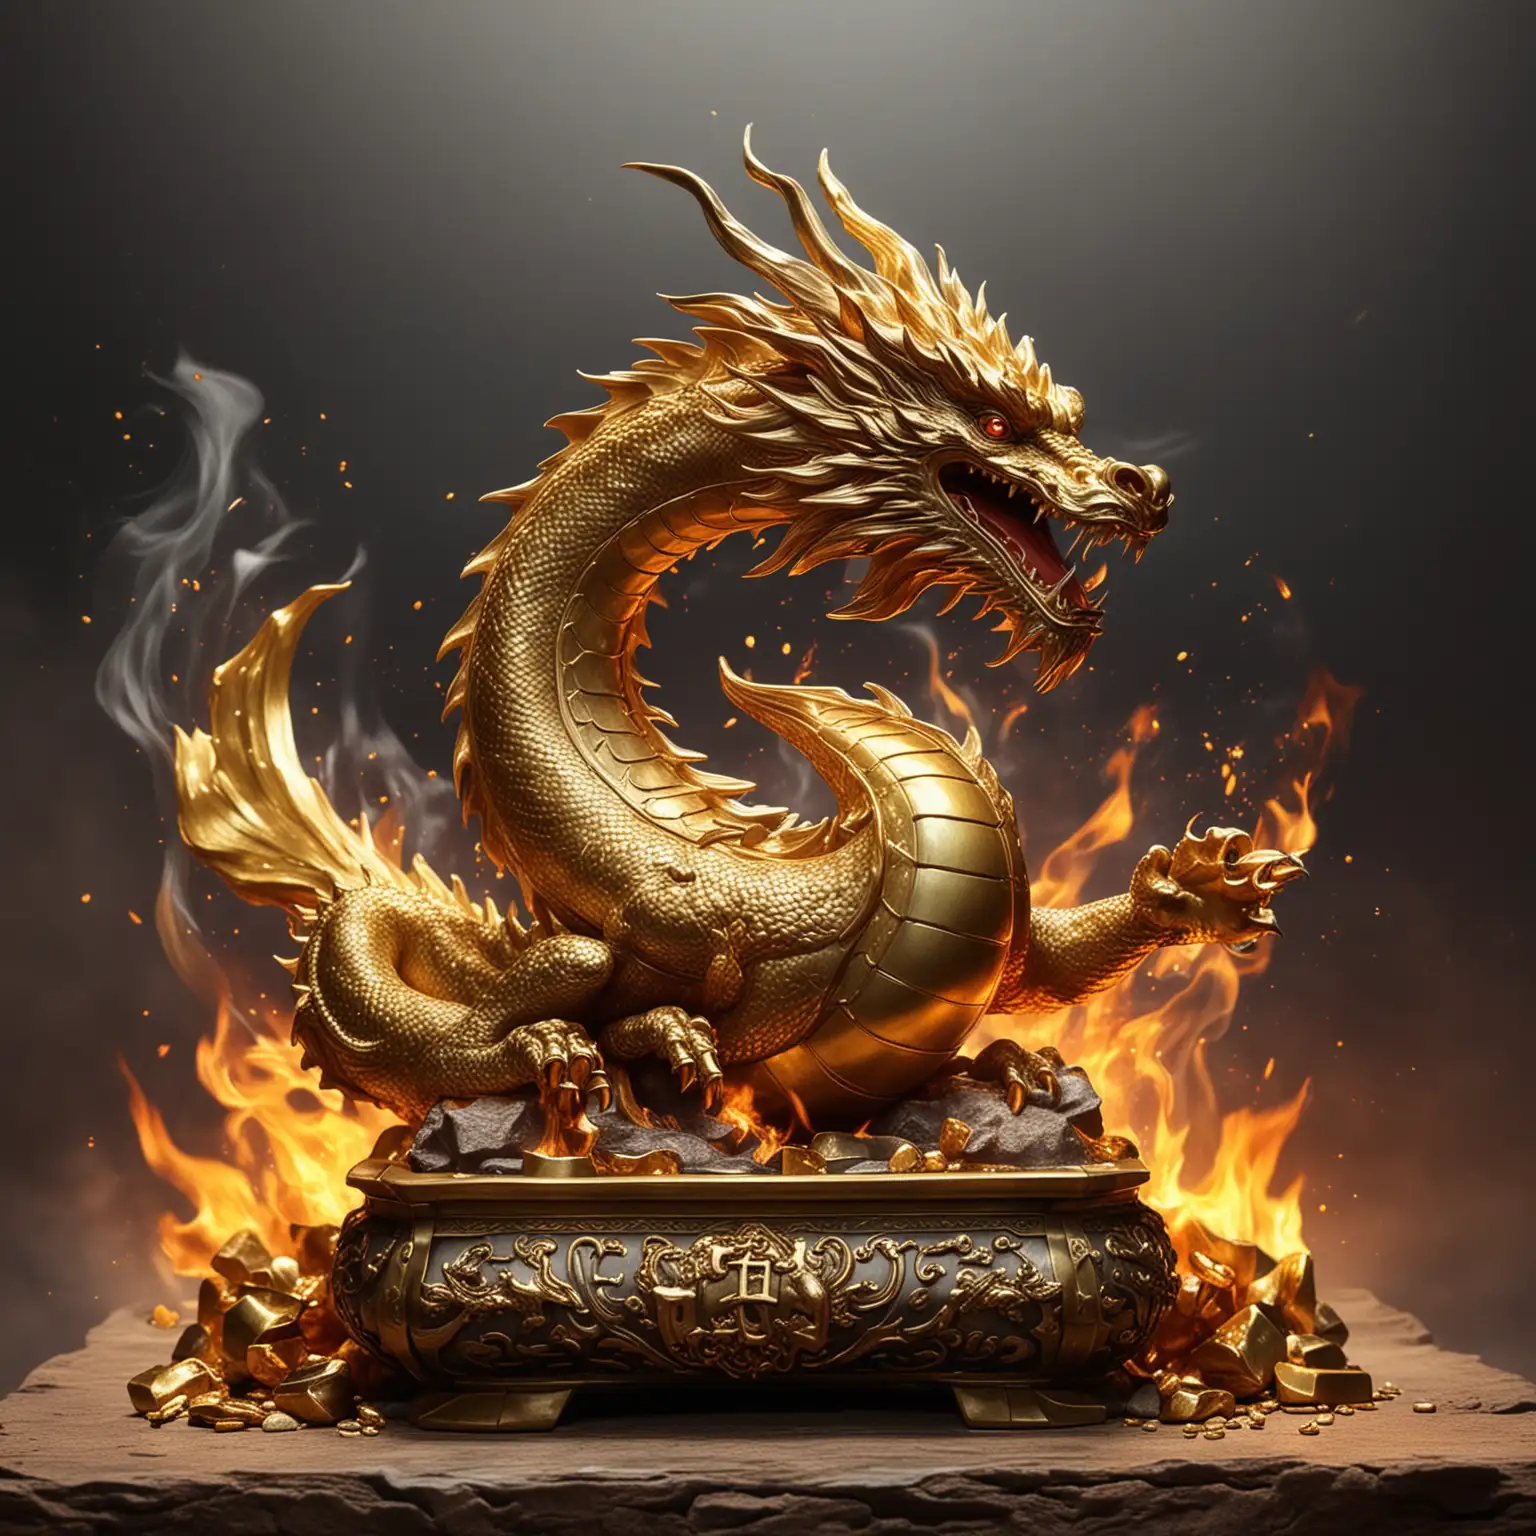 Majestic Dragon Guarding Glowing Gold Ingots amidst Fiery Ambiance